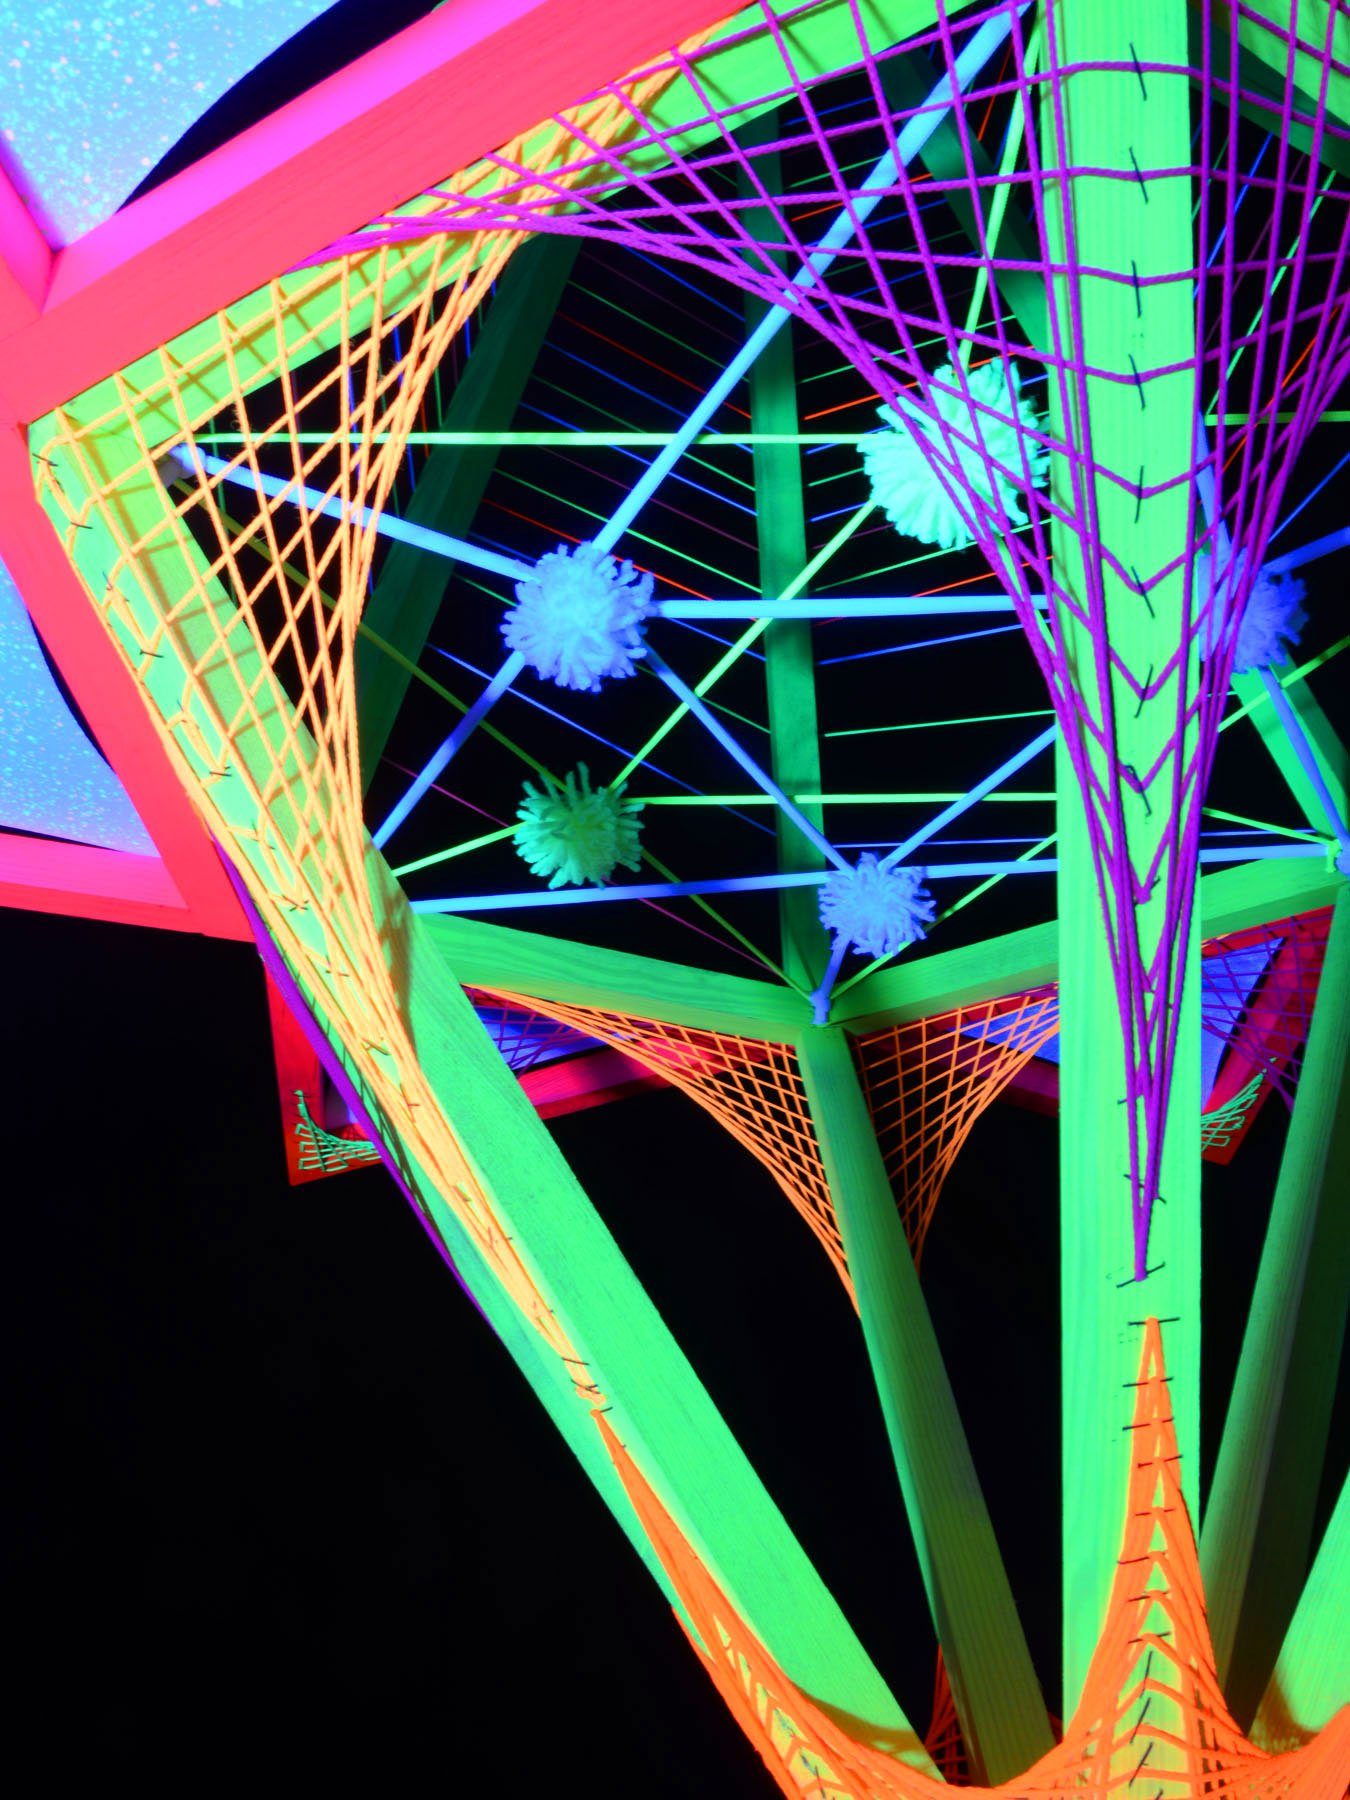 Schwarzlicht UV-aktiv, 3D Schwarzlicht Dekoobjekt leuchtet "Neon Flower" Dreiecken Sechseck mit 1,30m, PSYWORK StringArt unter